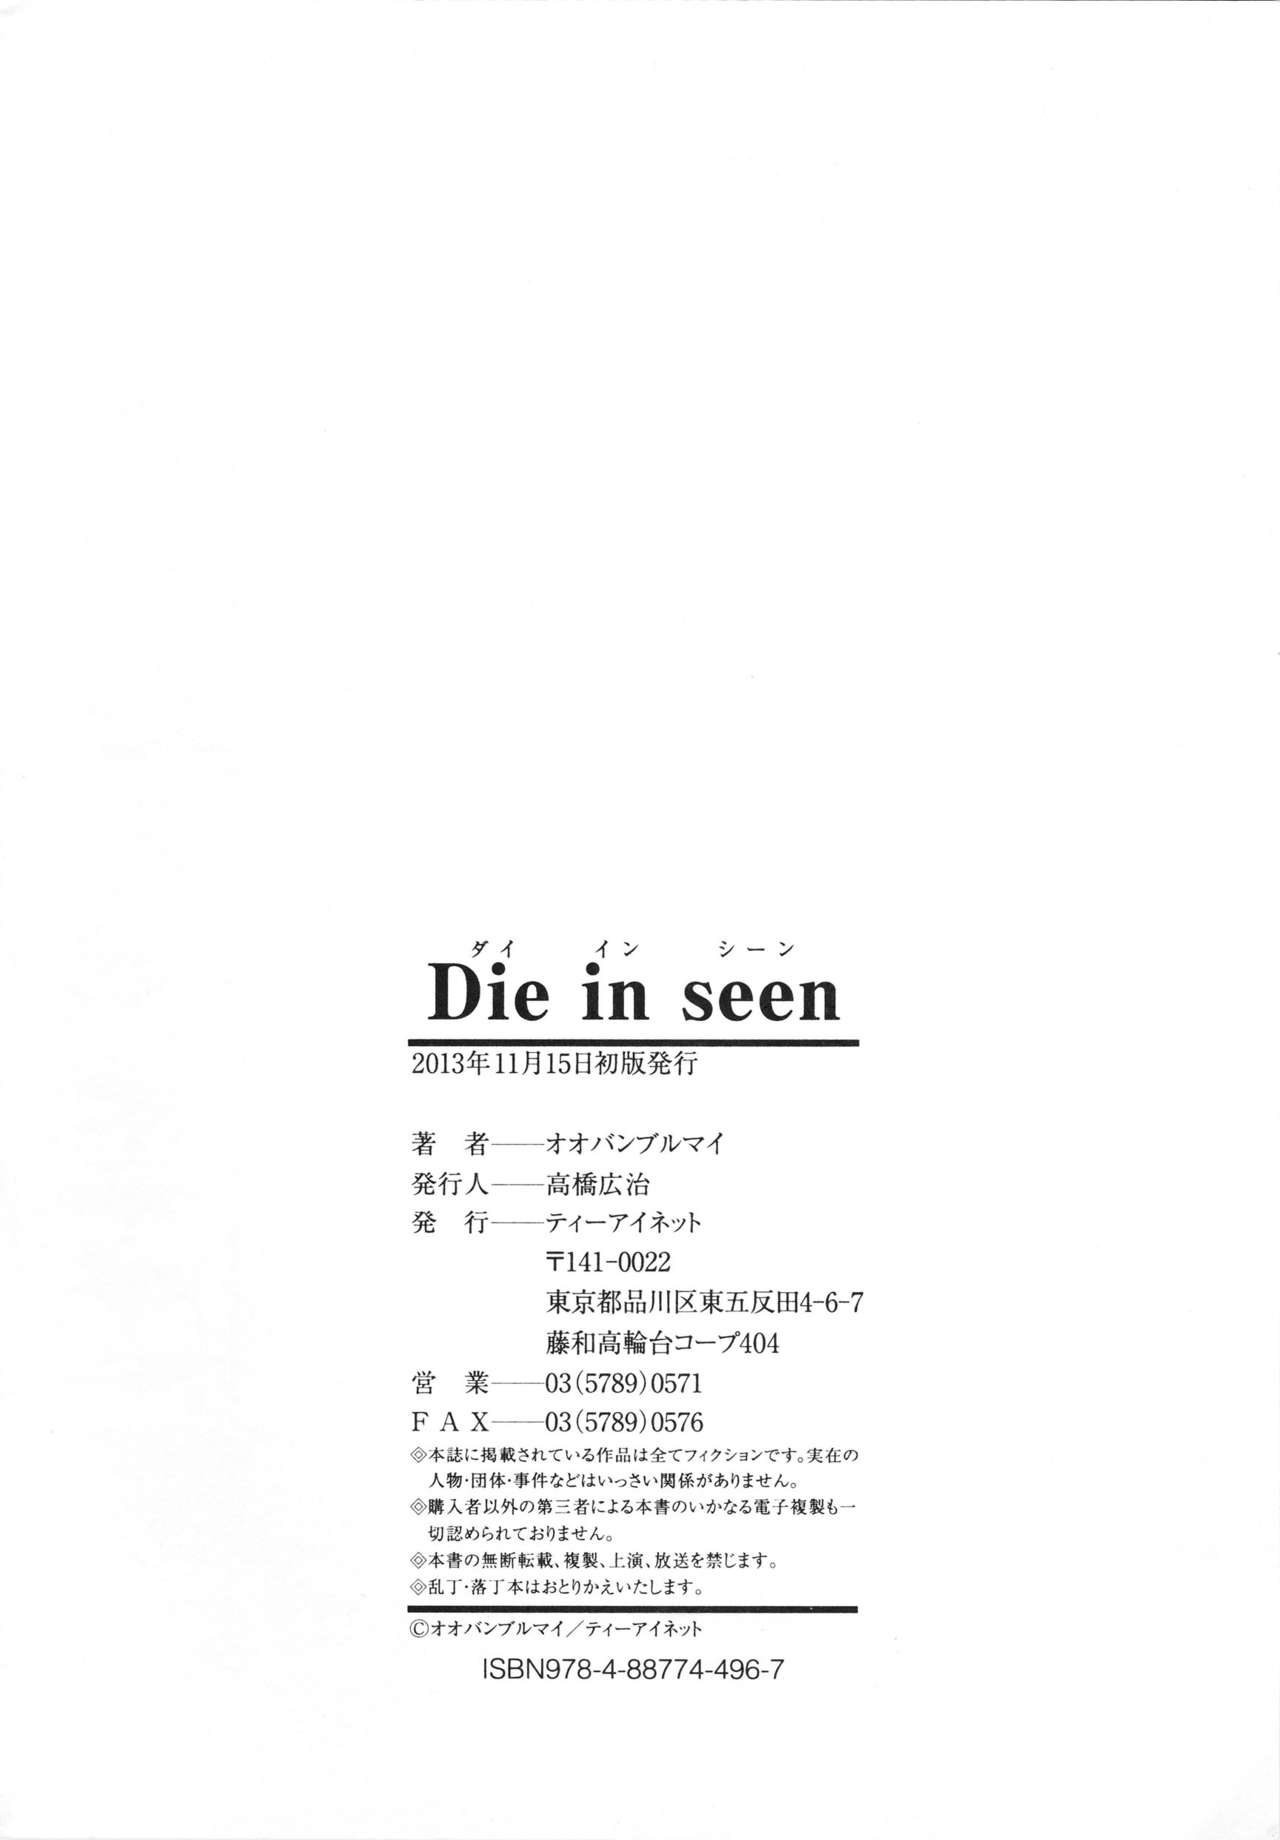 [Oobanburumai] Die in seen [オオバンブルマイ] Die in seen